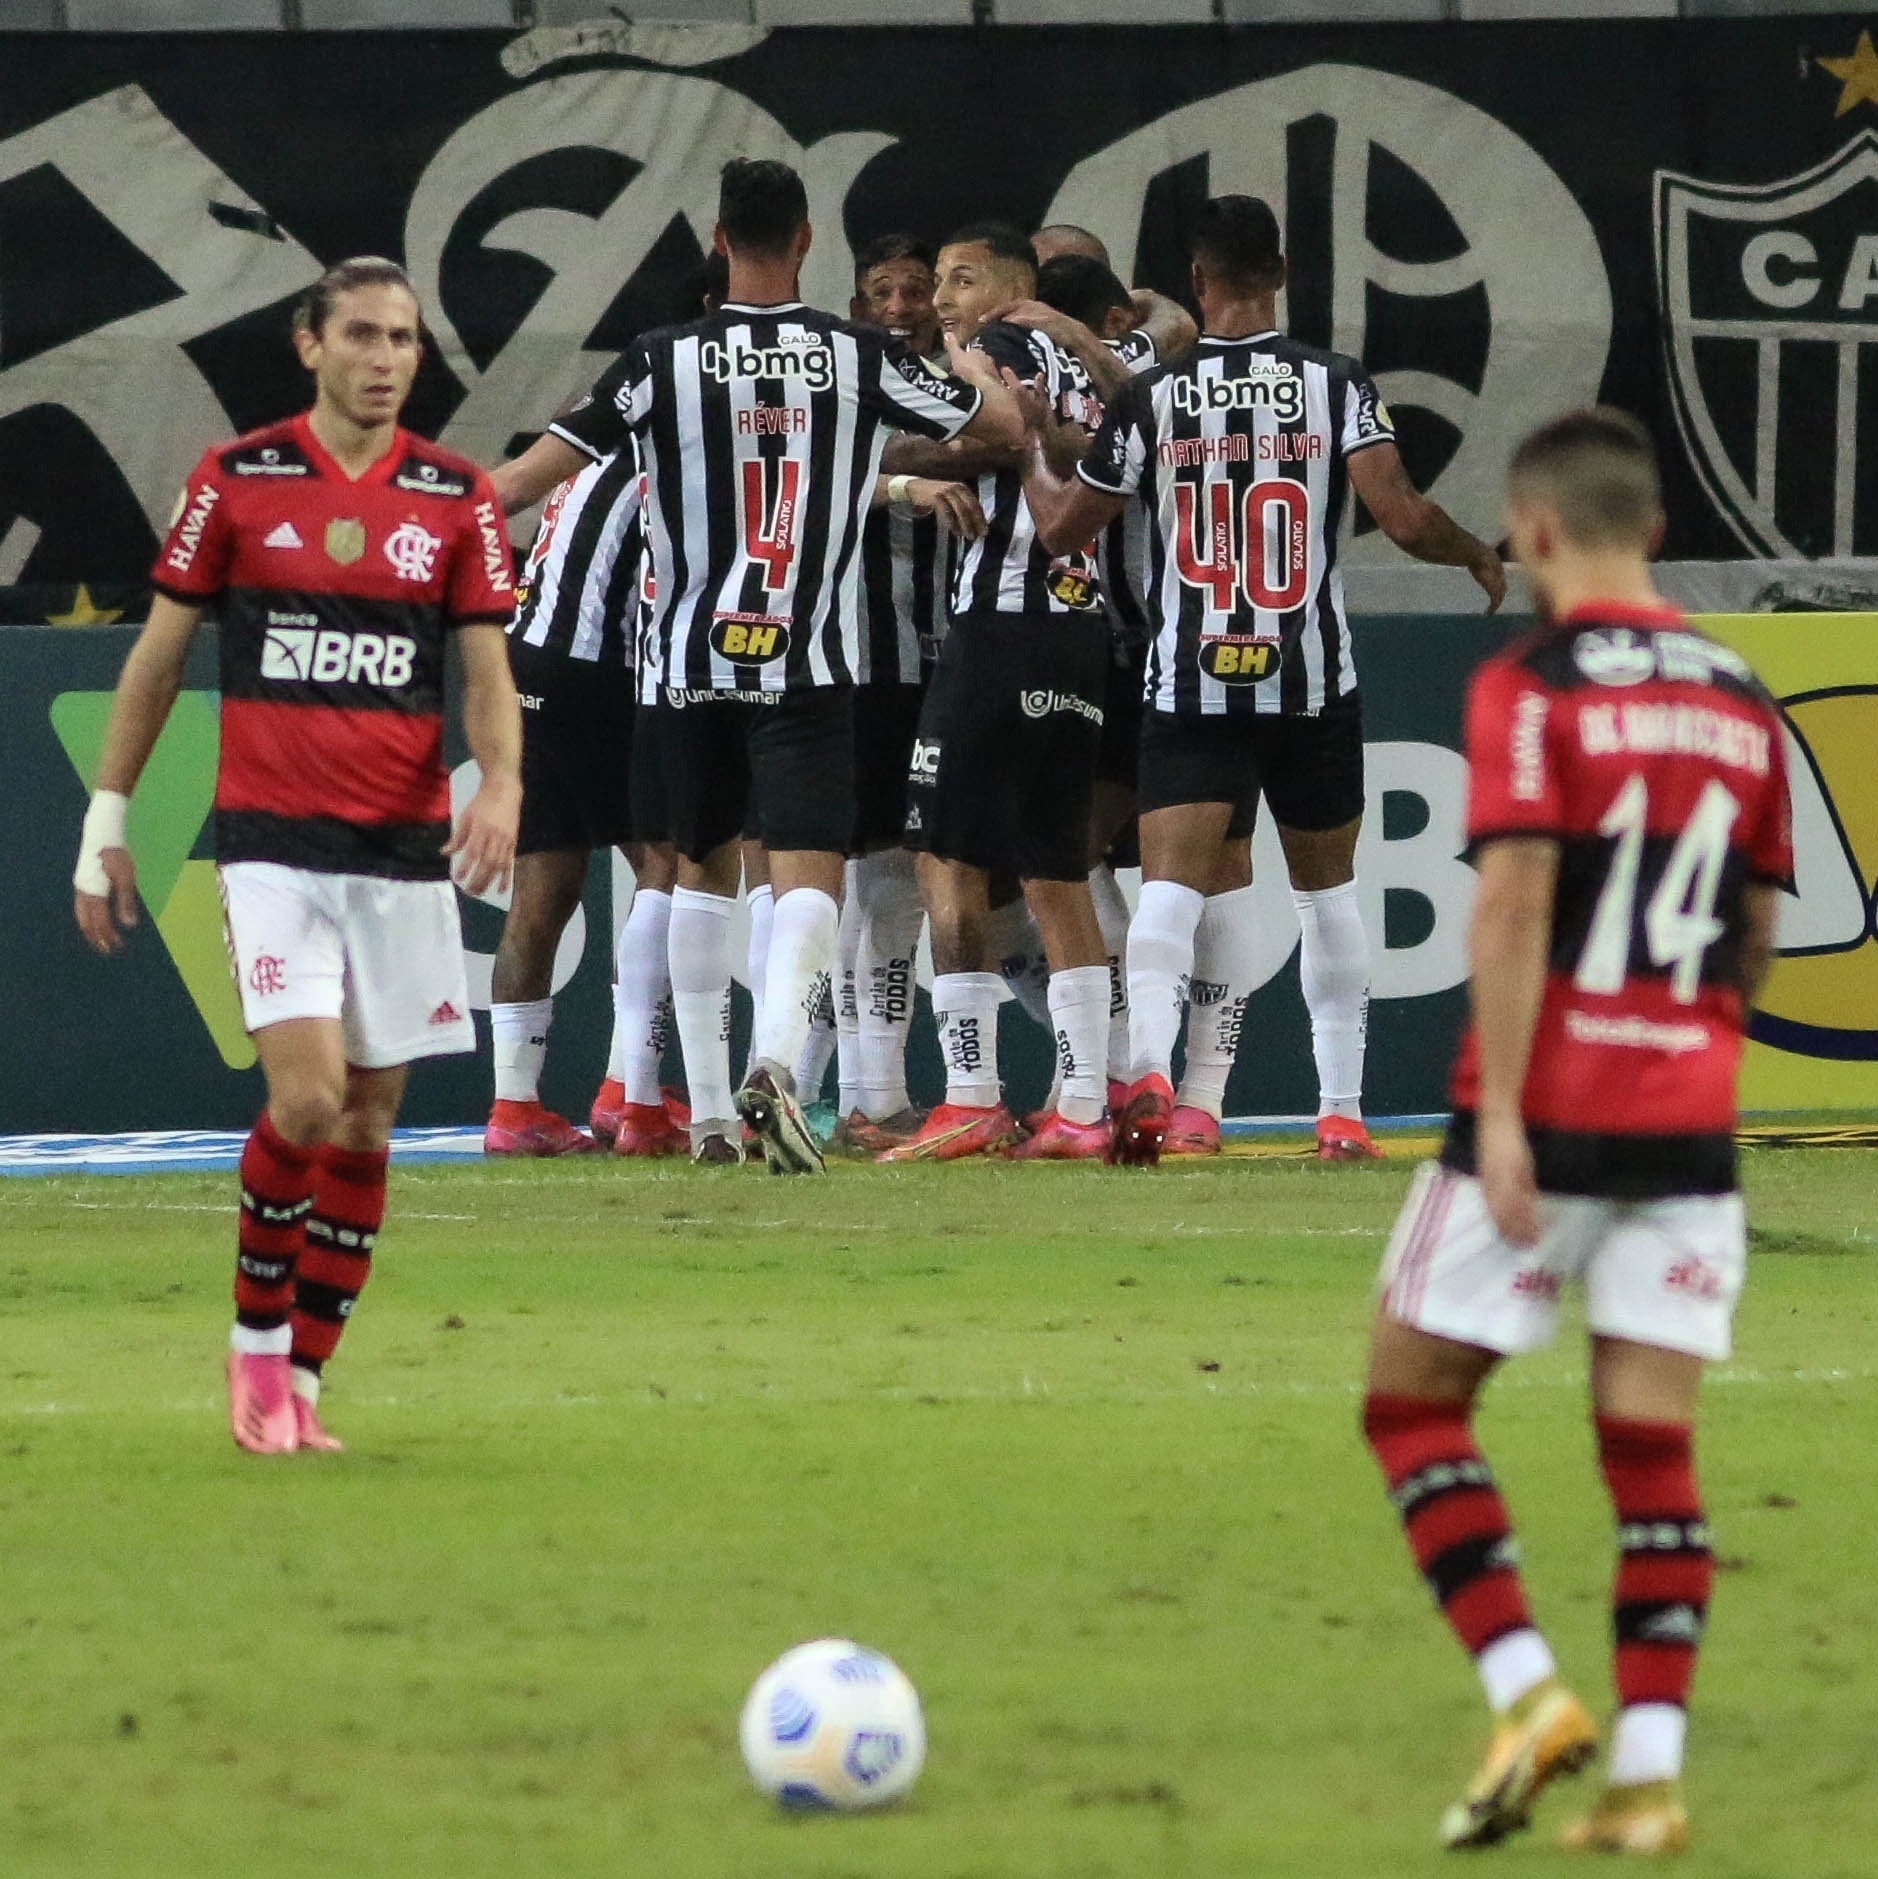 Brasileirão: como foram os últimos jogos entre Flamengo e Atlético-MG?